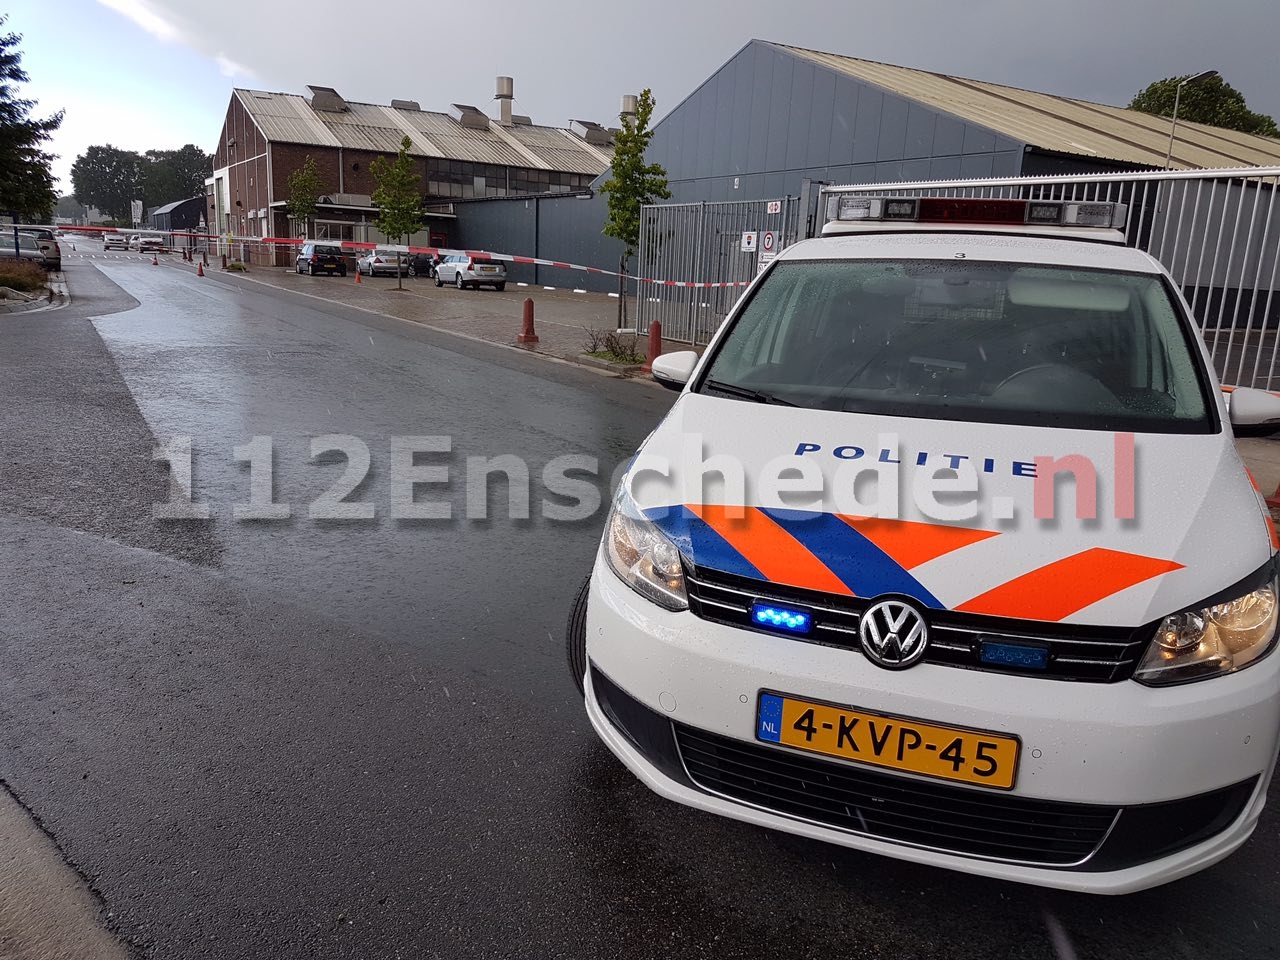 Ontvoering in Hengelo, witte Audi A6 voortvluchtig, persoon gewond na schietpartij